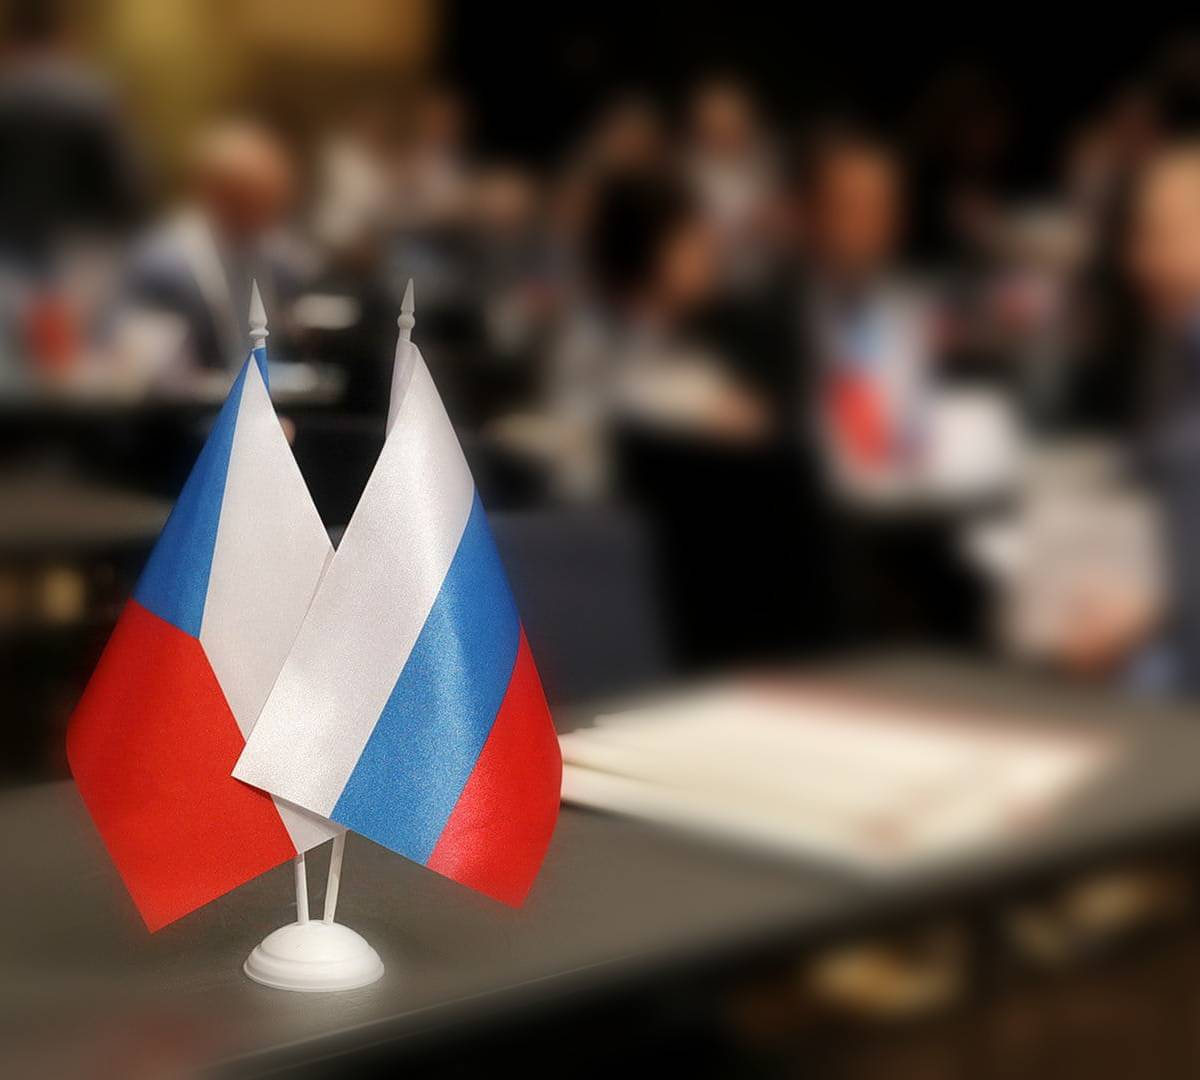 Чешские власти действуют вопреки здравому смыслу в отношениях с Россией